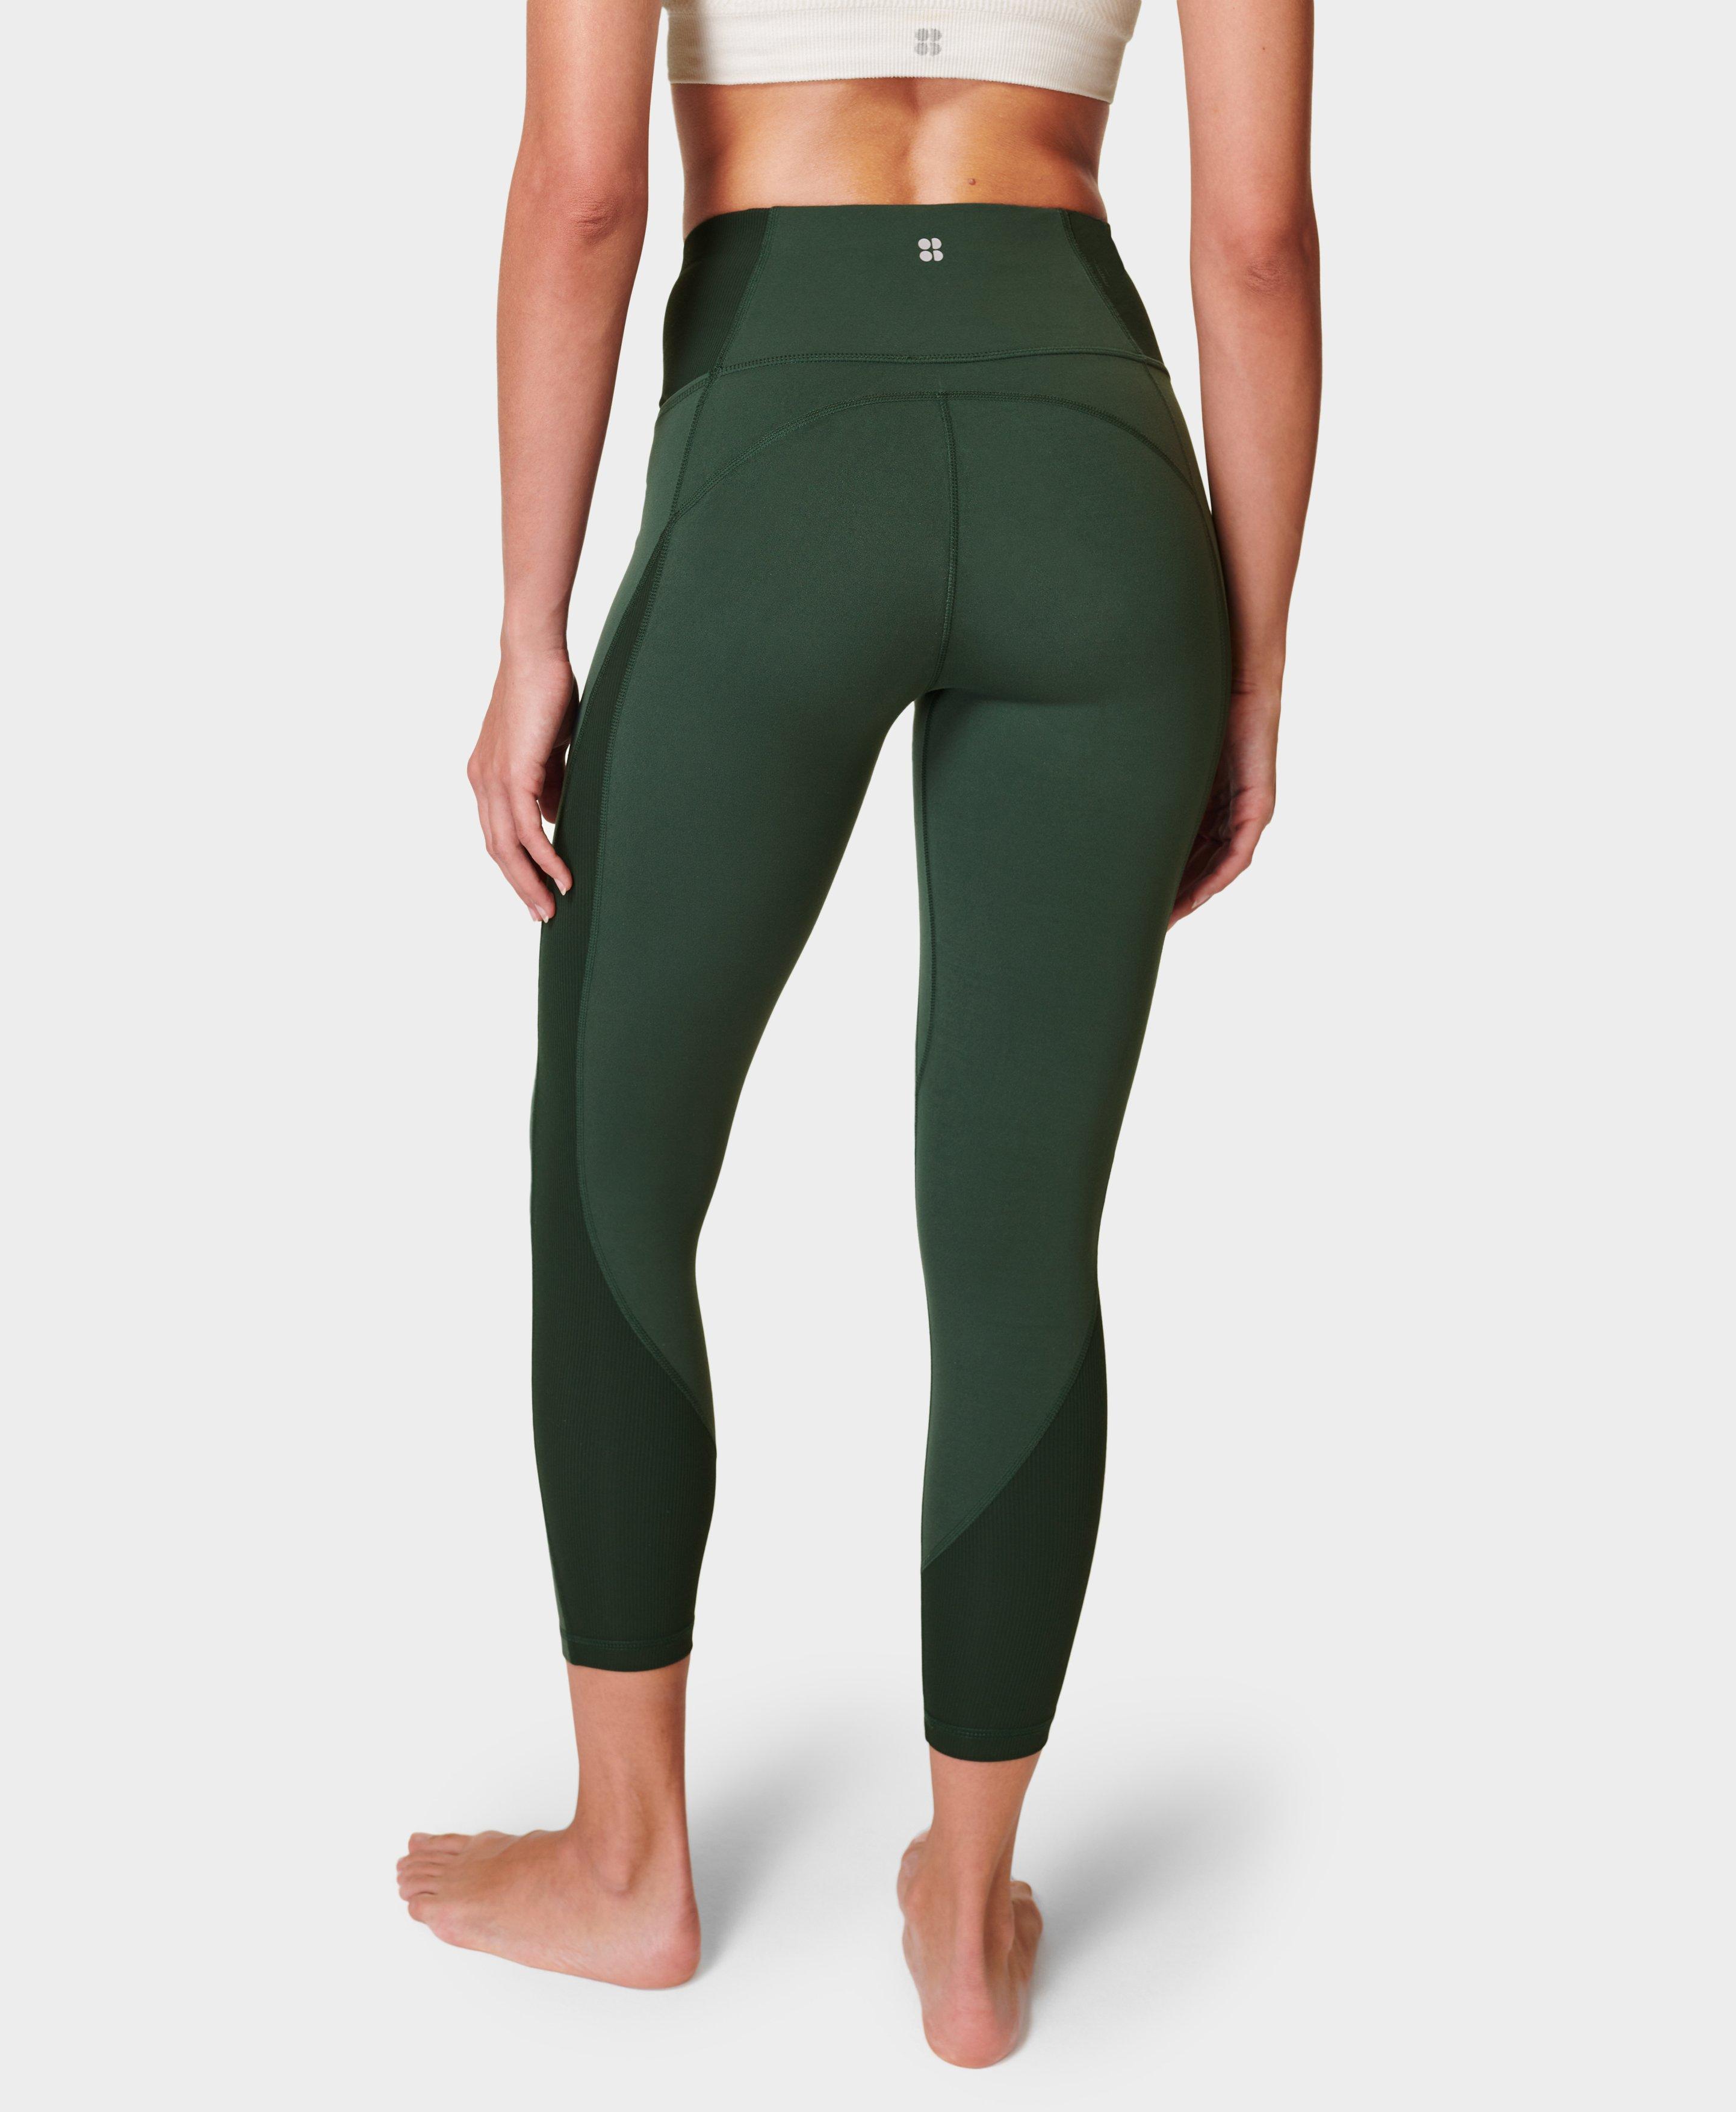 Women’s Olive Green 23” Inseams Lululemon leggings Size 4 Read Description